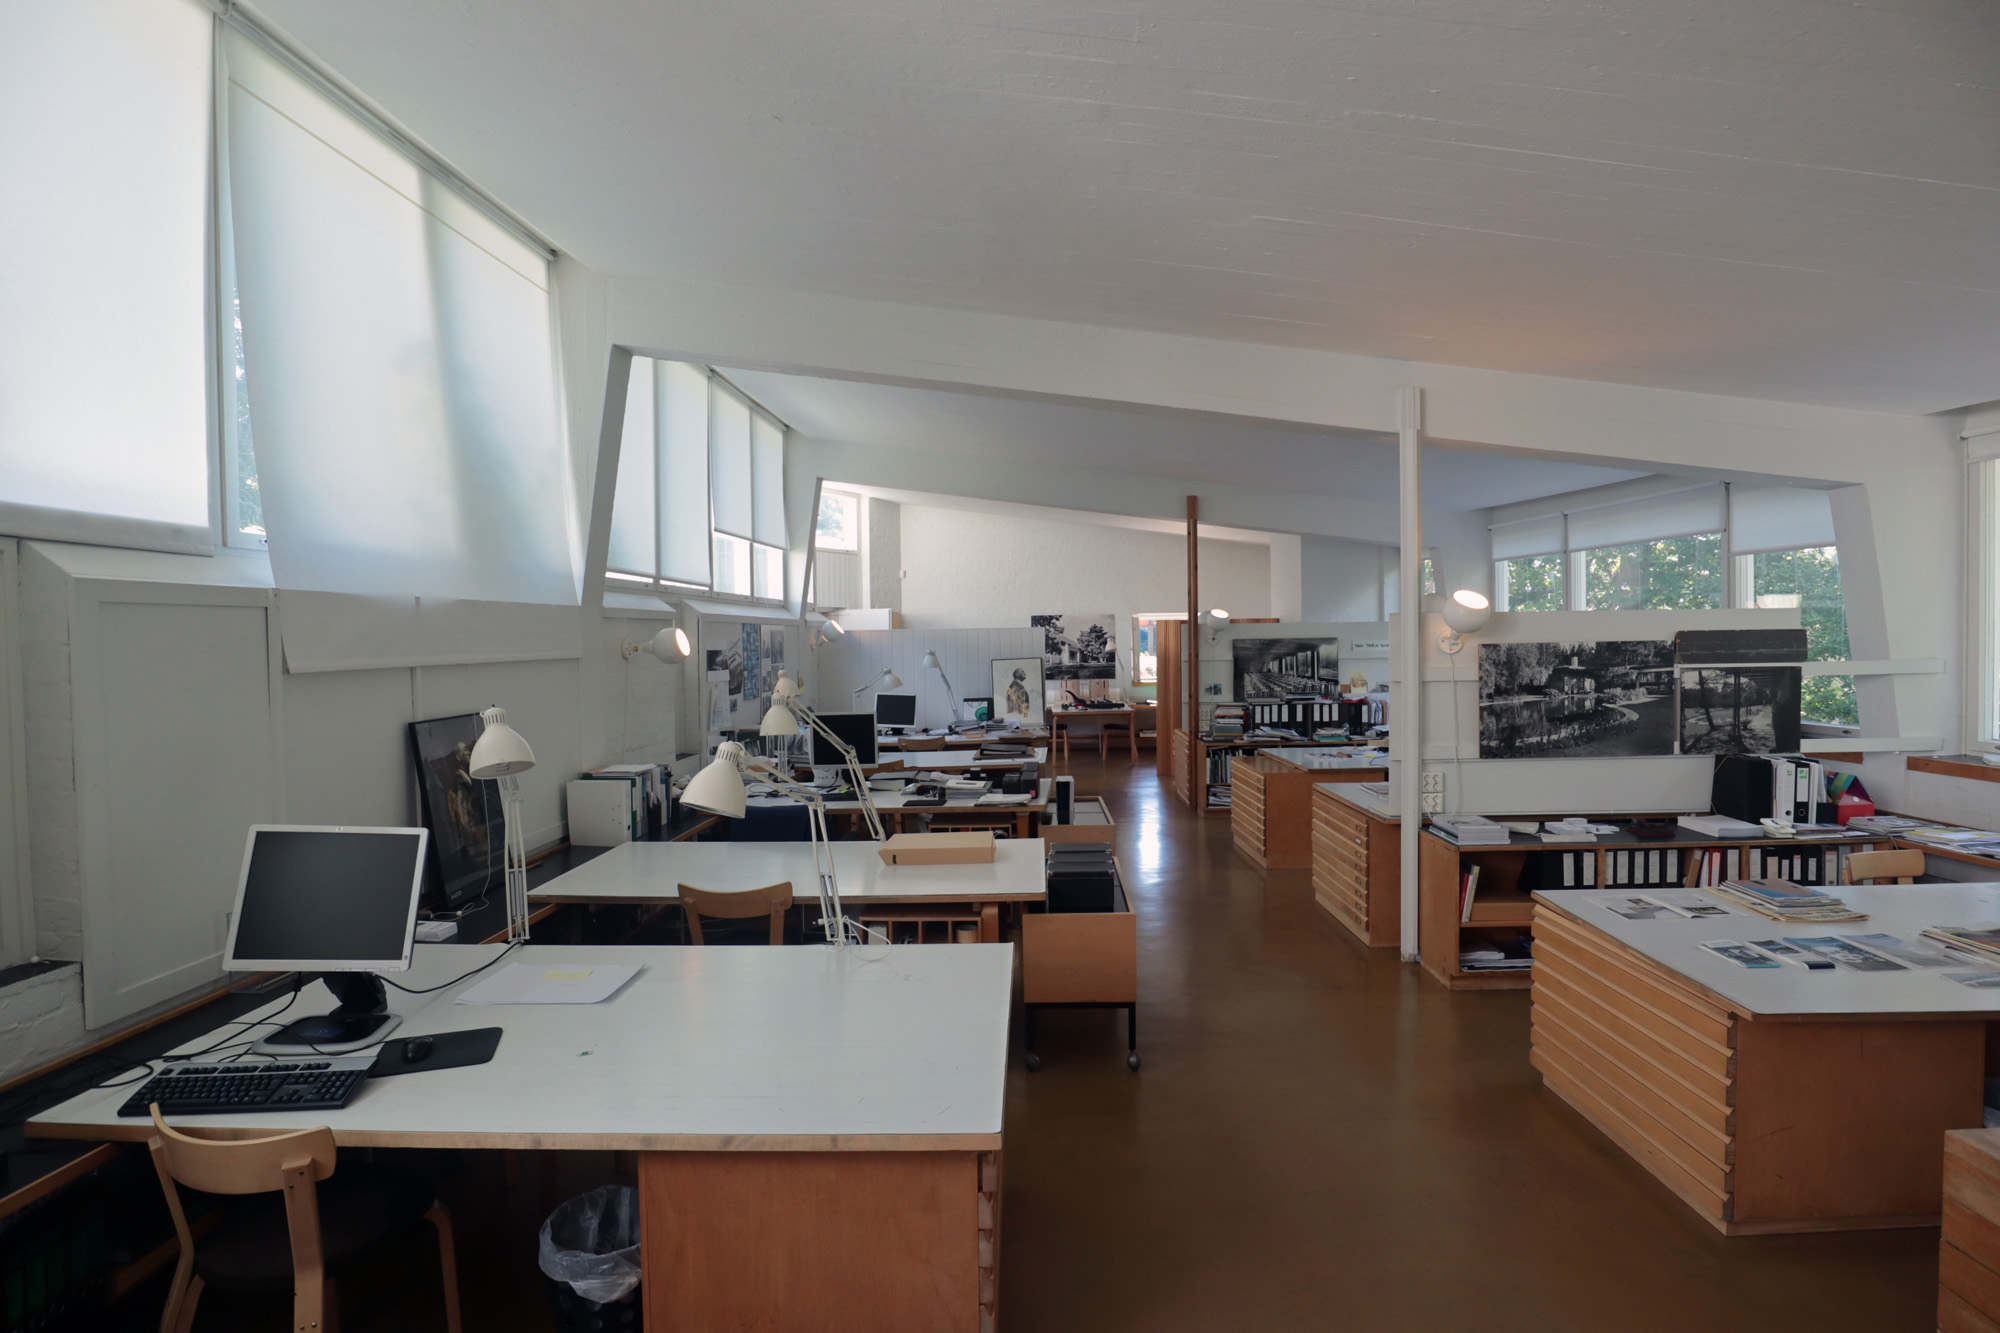 Das Bauwerk entstand 1955 nach einem Entwurf von Alvar Aalto.